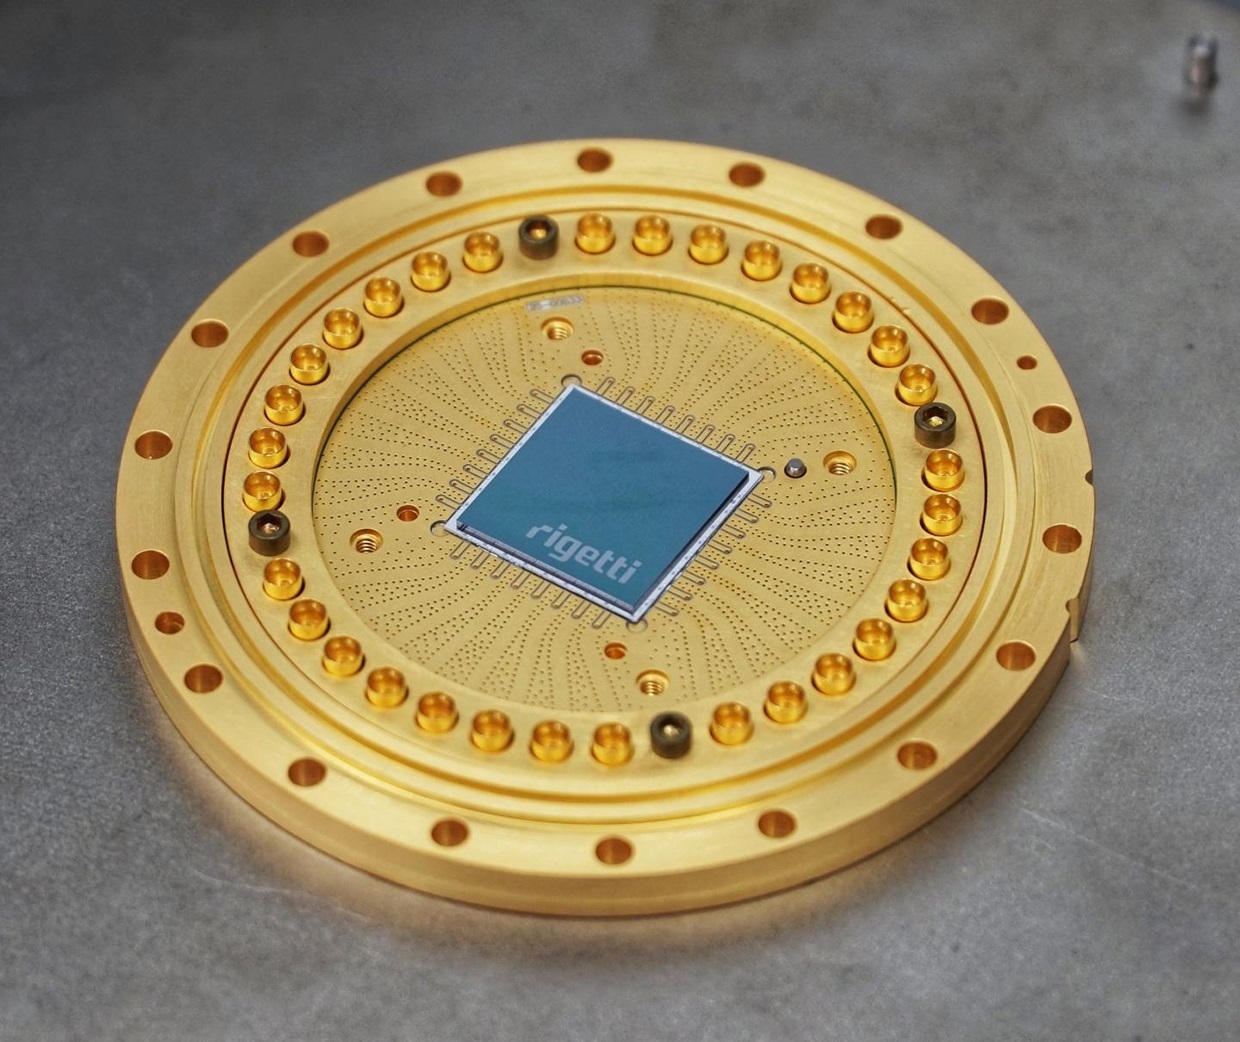 This is Rigetti's 19Q superconducting quantum processor